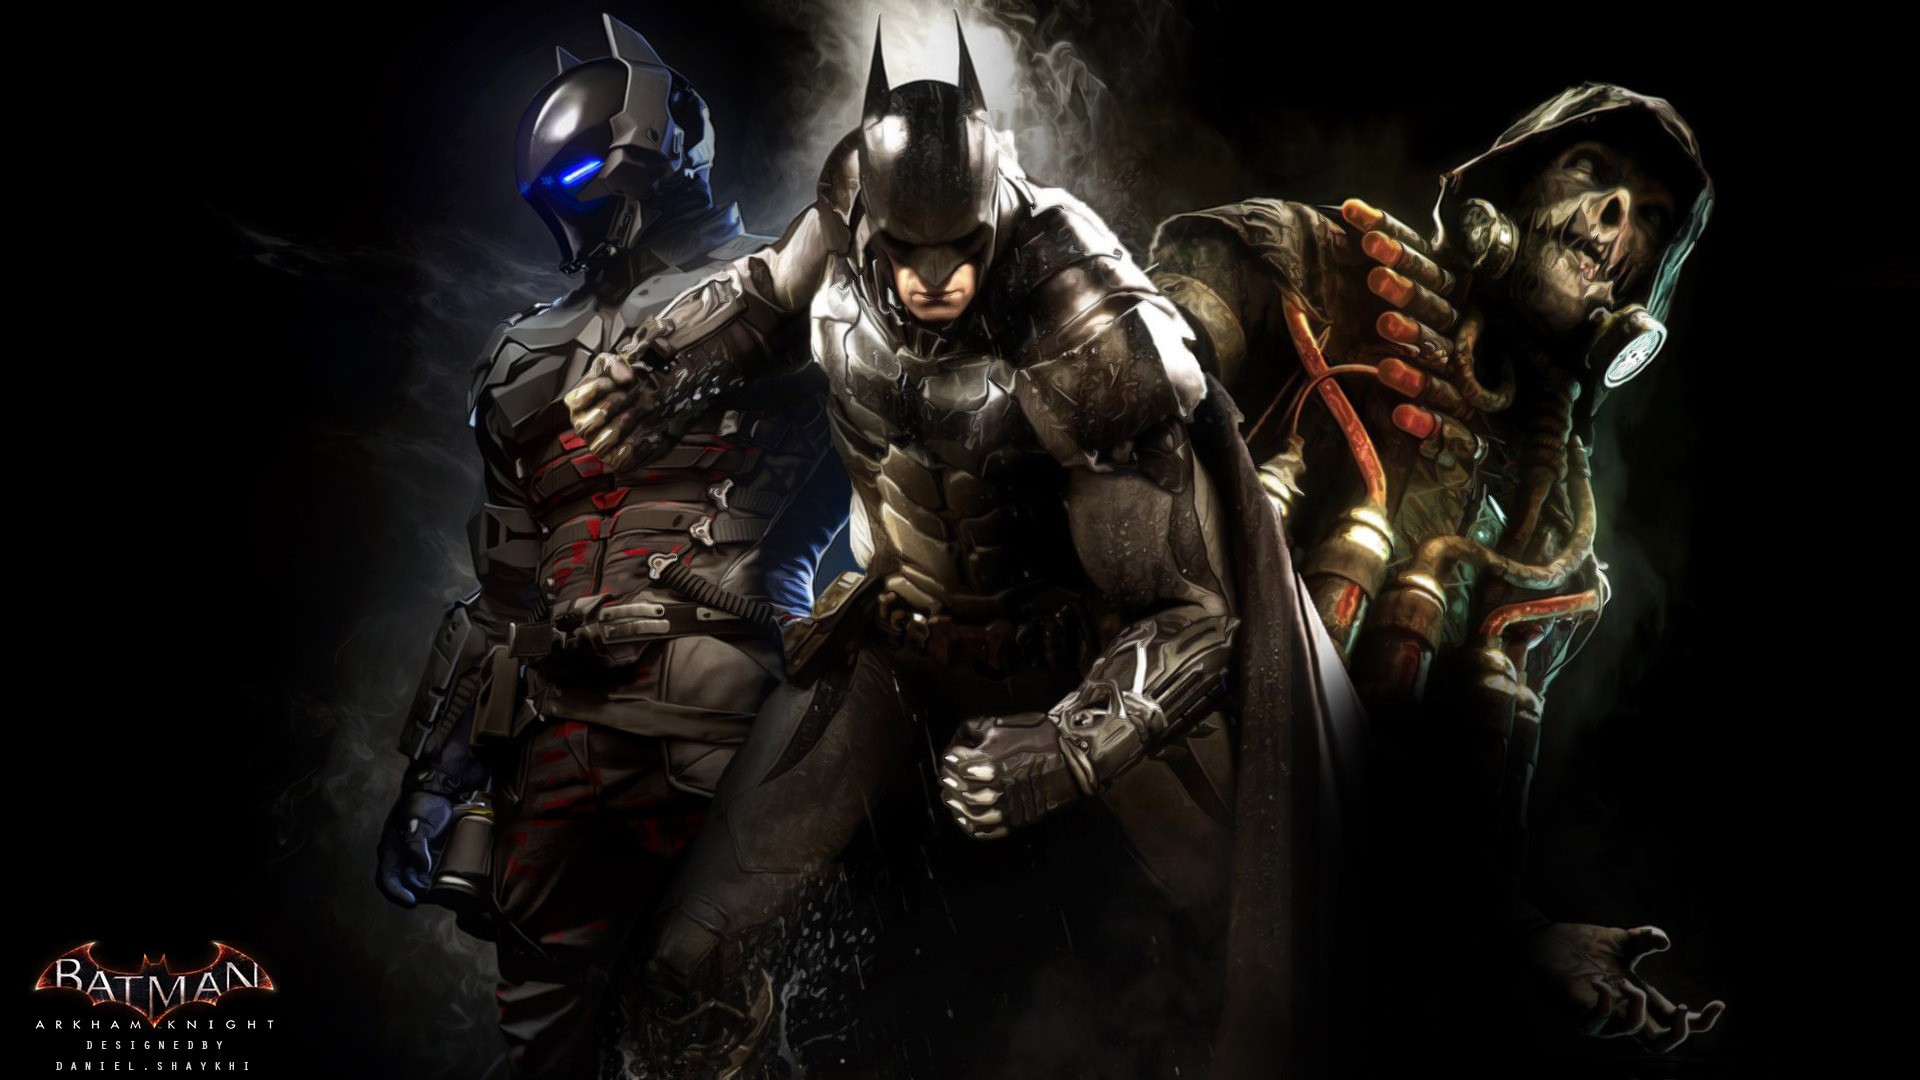 Batman: Arkham Knight, Rocksteady Studios, Batman, Scarecrow (character), DC Comics, Video Games Wallpaper